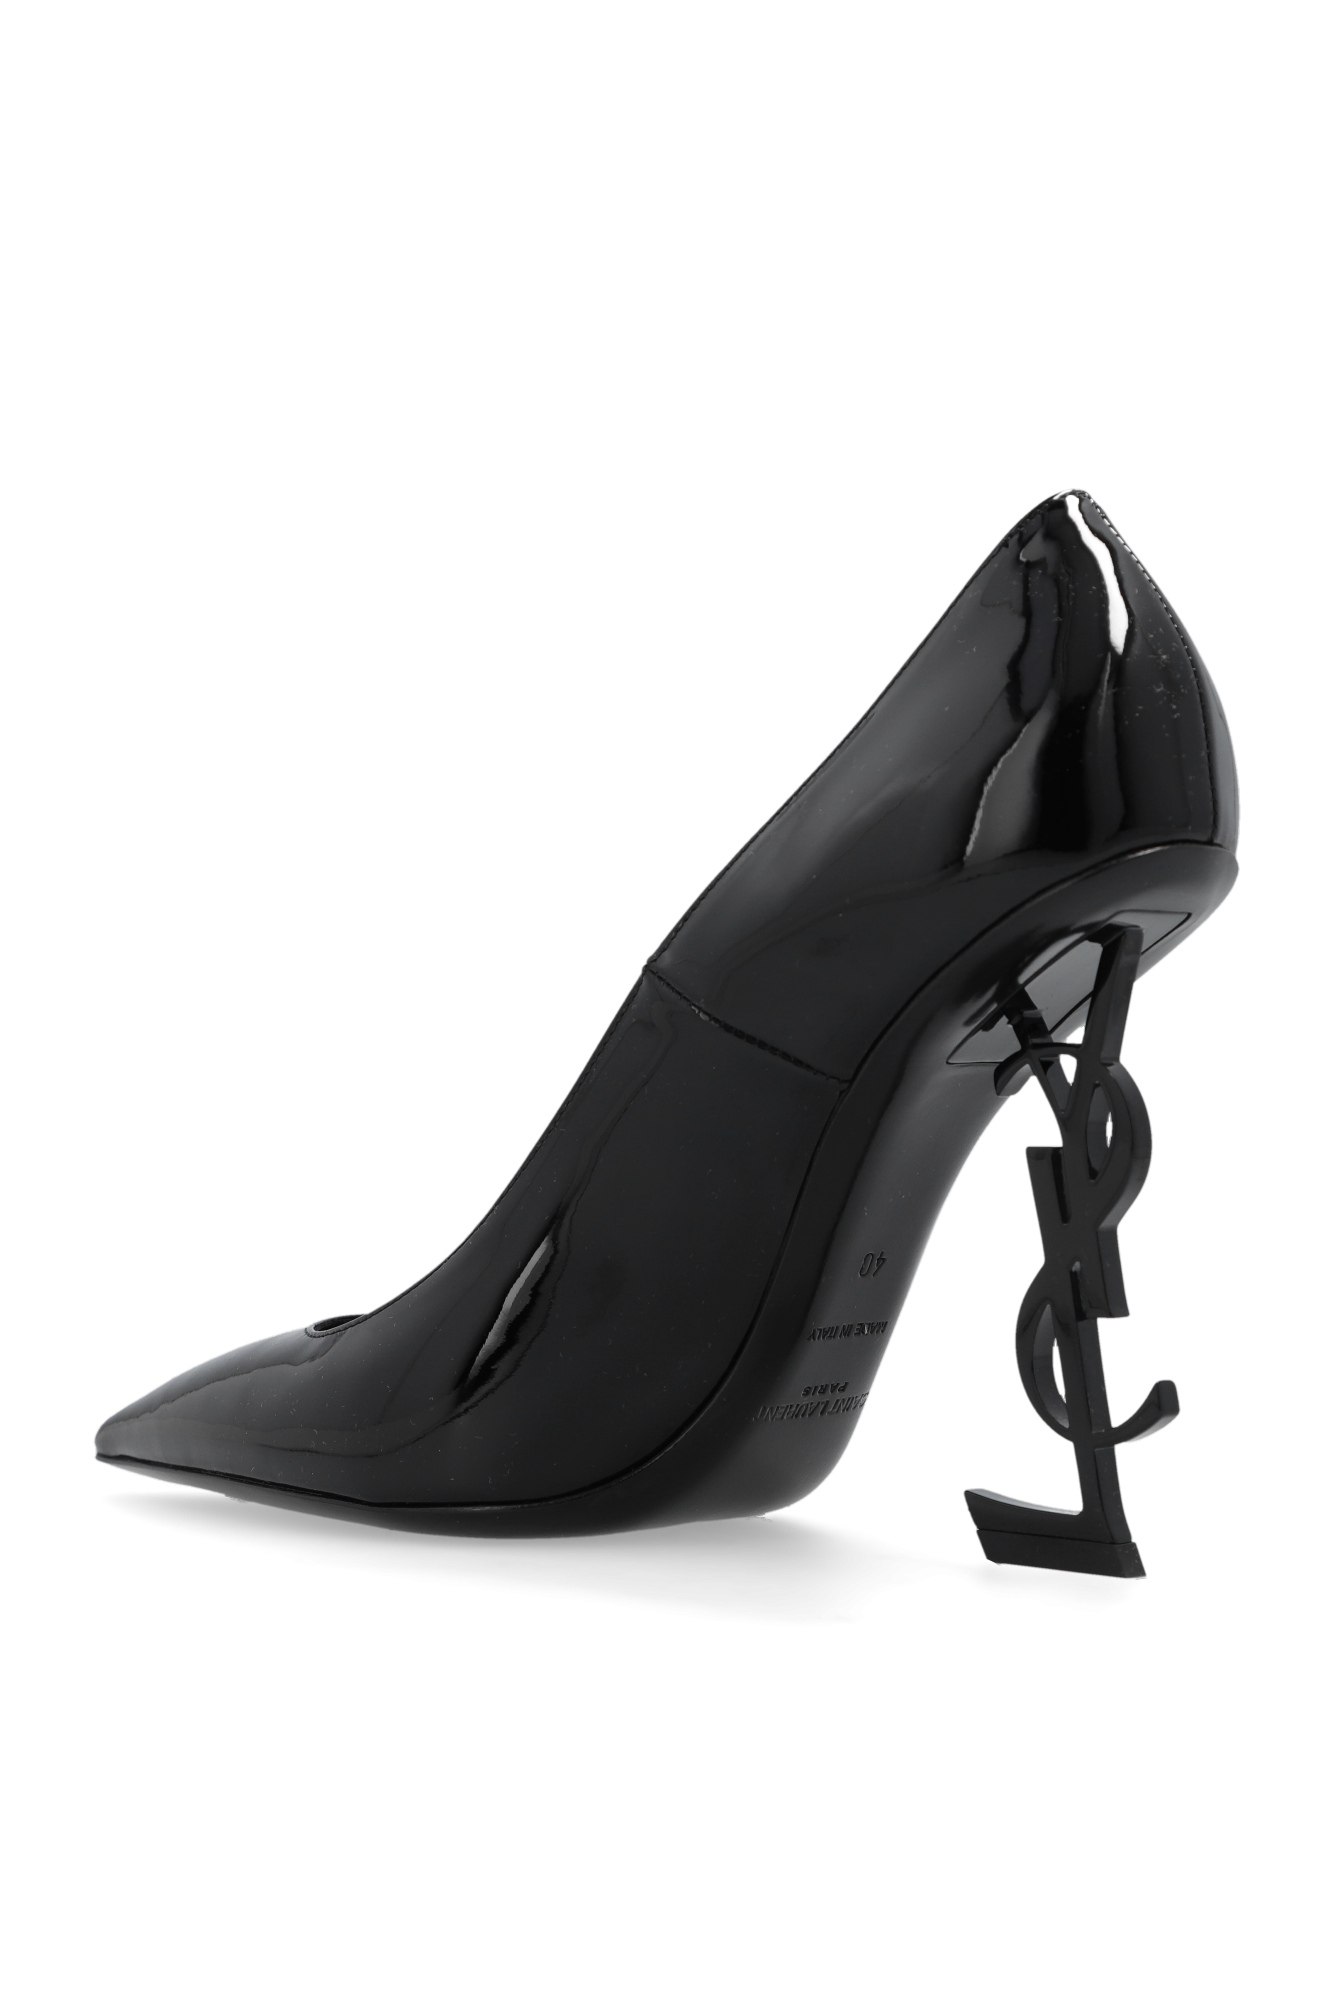 Saint Laurent 'Opyum' stiletto pumps, Women's Shoes